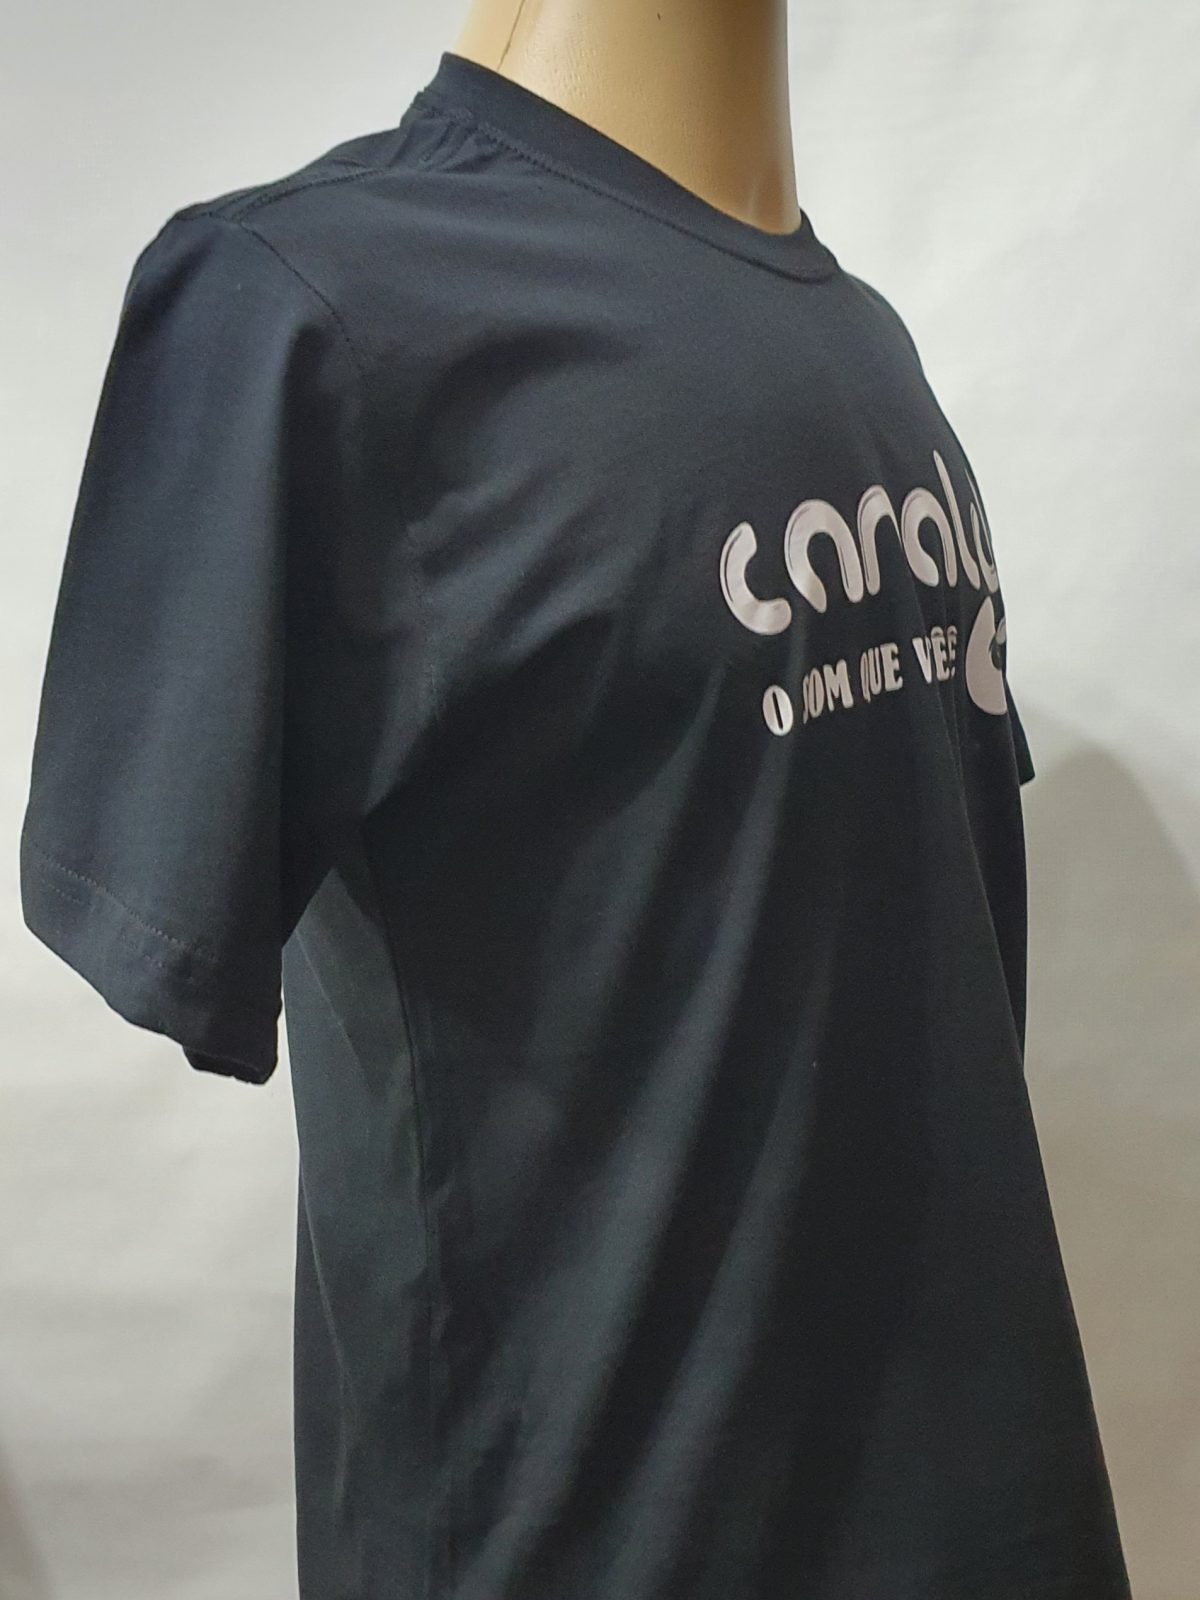 Camiseta Estampada Canal DJ by Bordado & Cia - @bordado.cia @canaldj